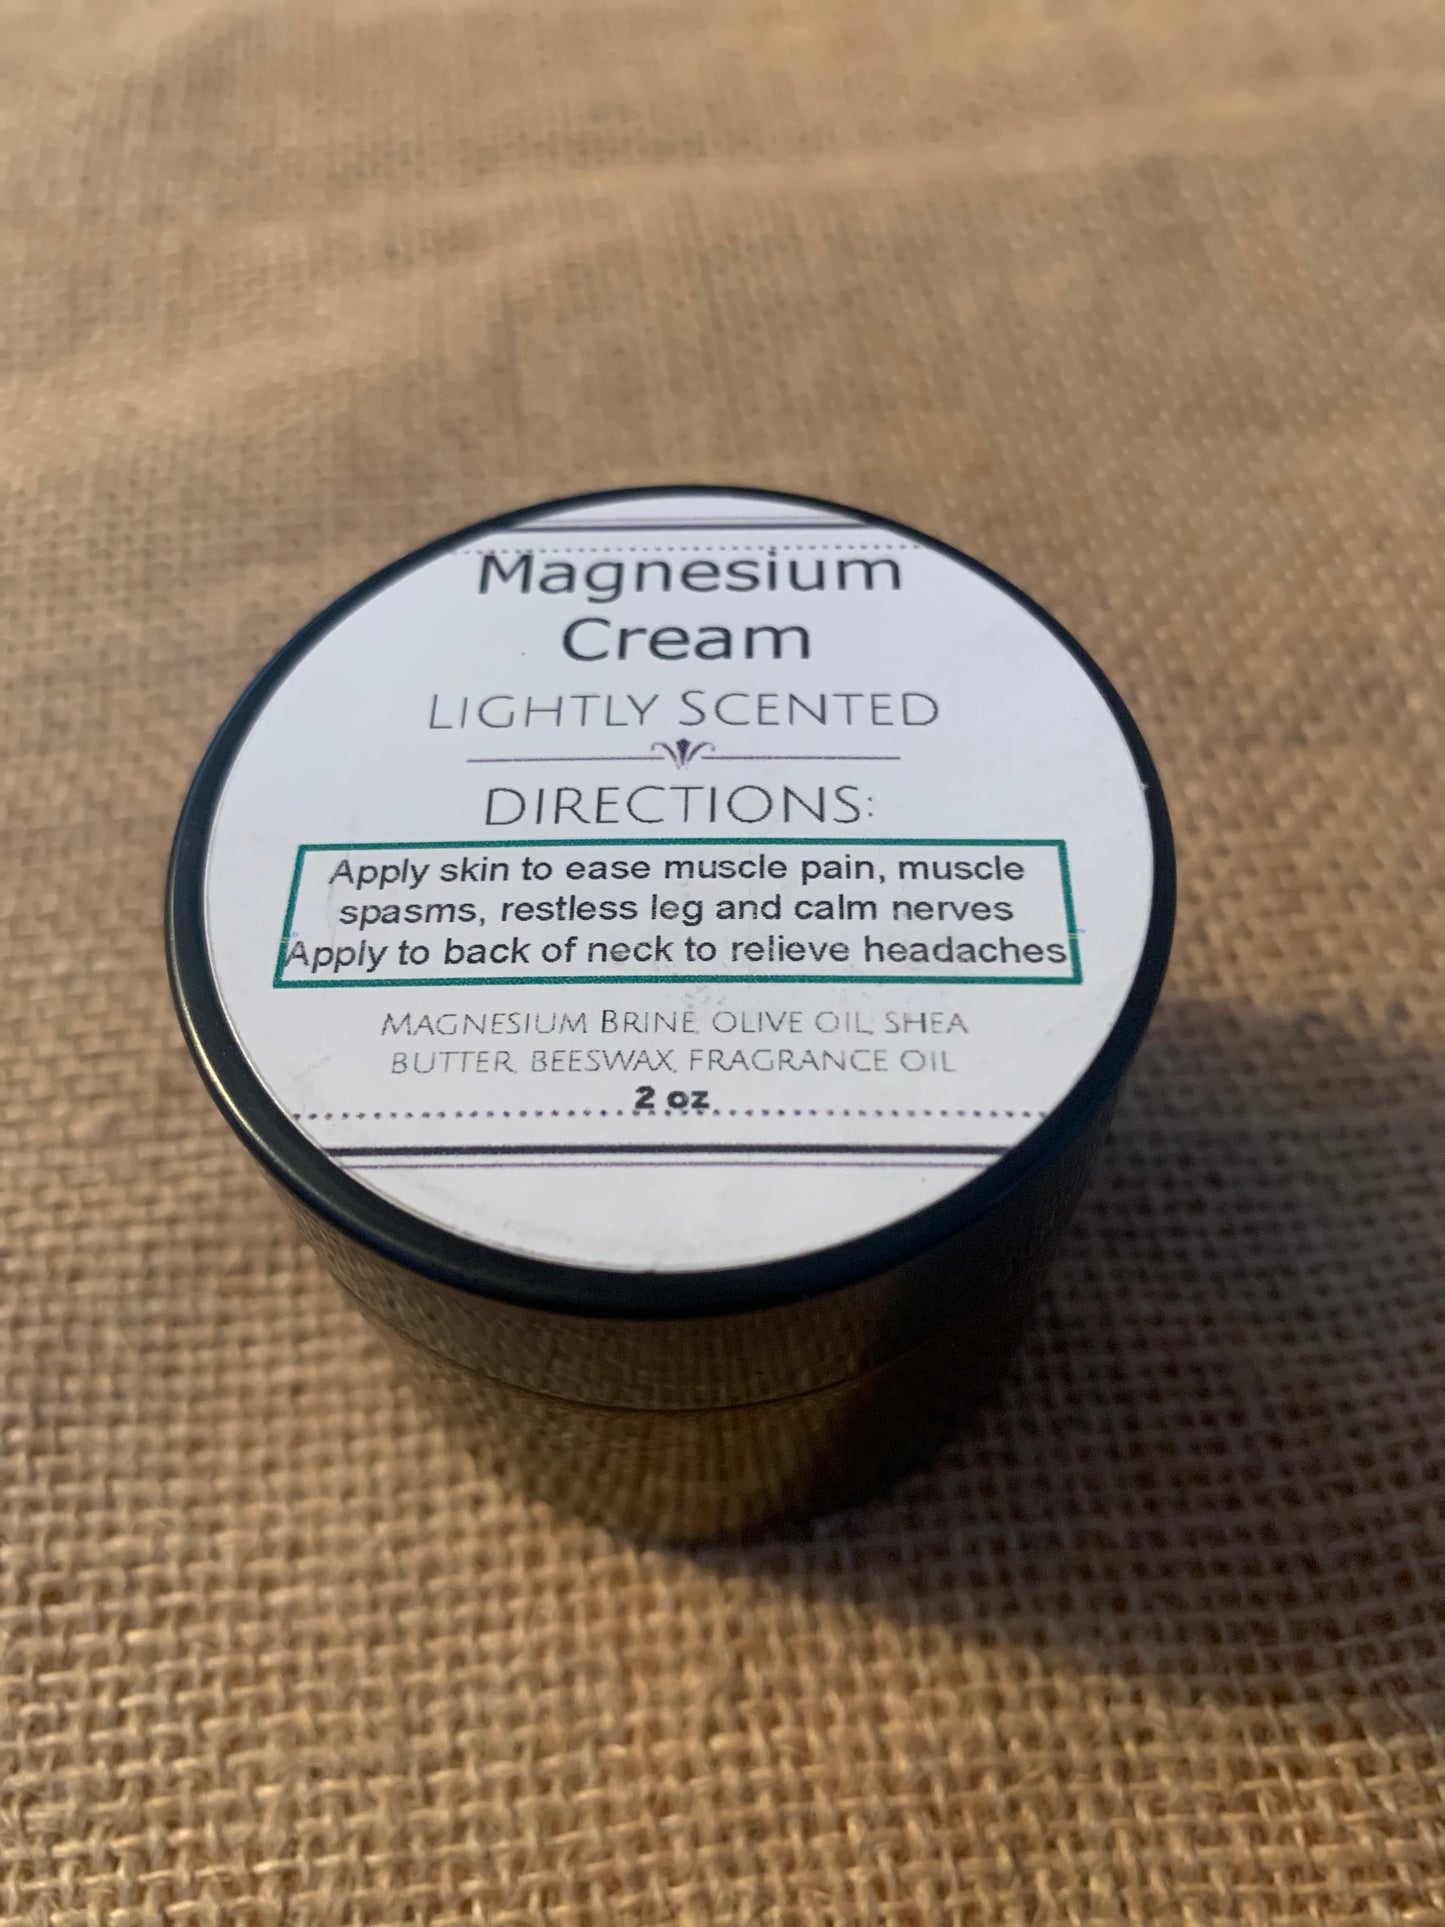 Magnesium Cream  is